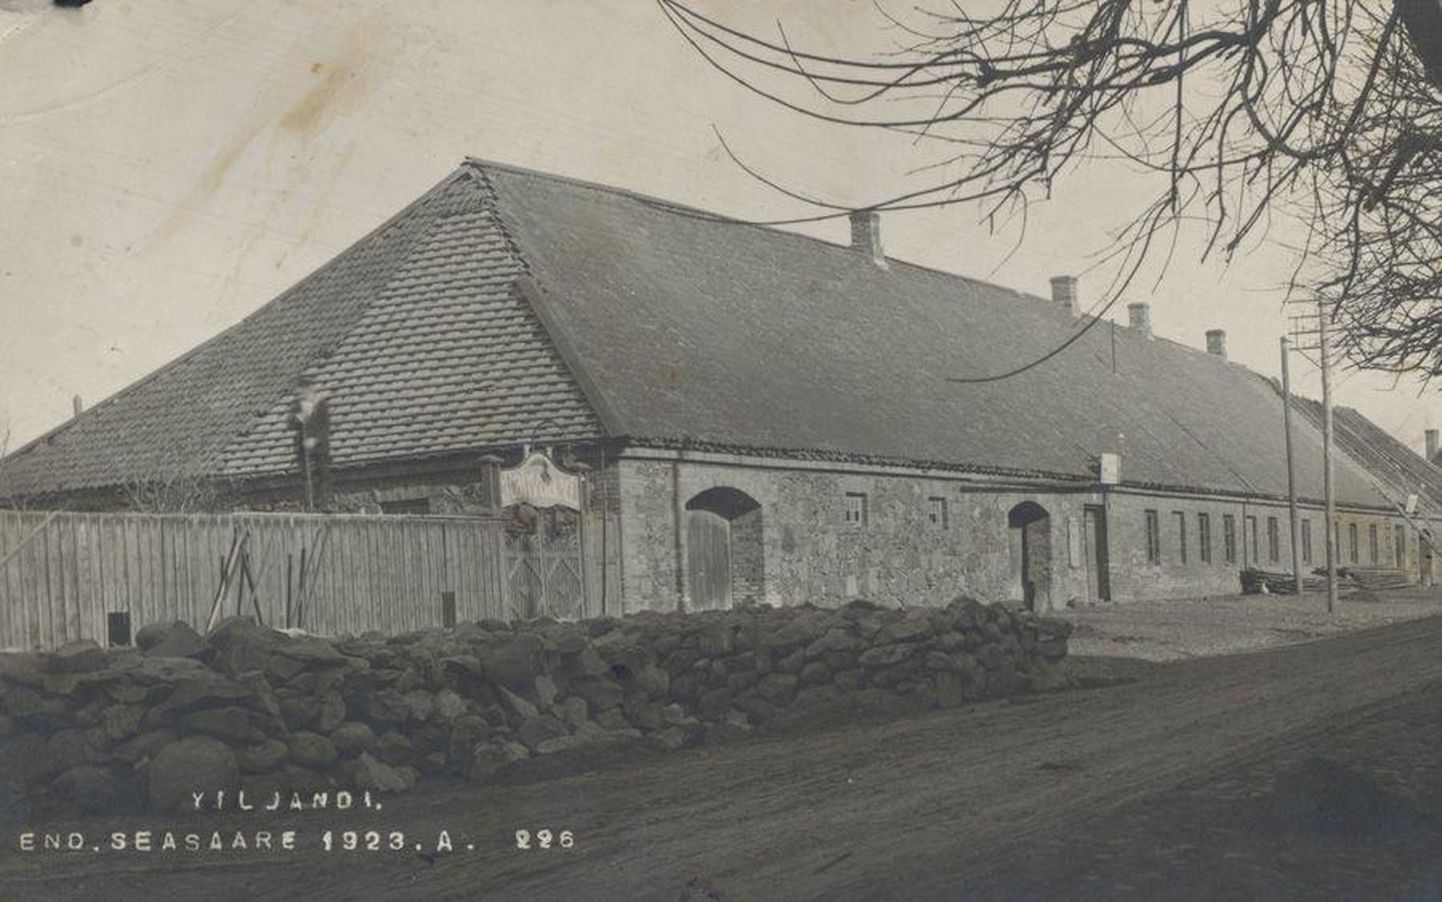 Seasaare kõrts Viljandis Tallinna tänaval enne ümberehitamist 1923. aastal. 5. juulil 1941 põles Seasaare hoone maha. Tõenäoliselt oli selle taga süütamine, sest sõda polnud veel linna jõudnud.